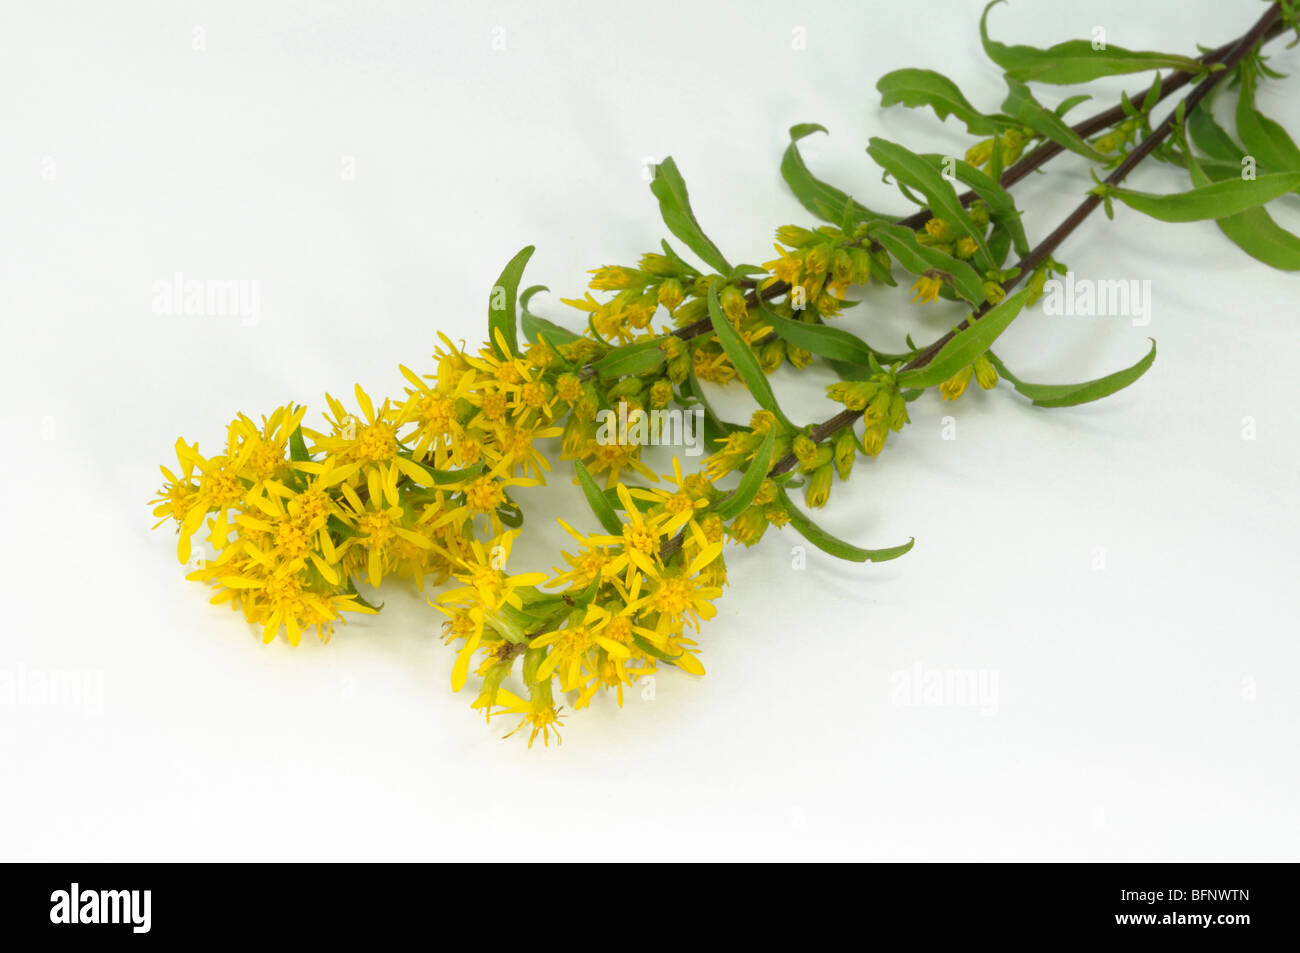 European Goldenrod (Solidago virgaurea), flowering stem, studio picture. Stock Photo